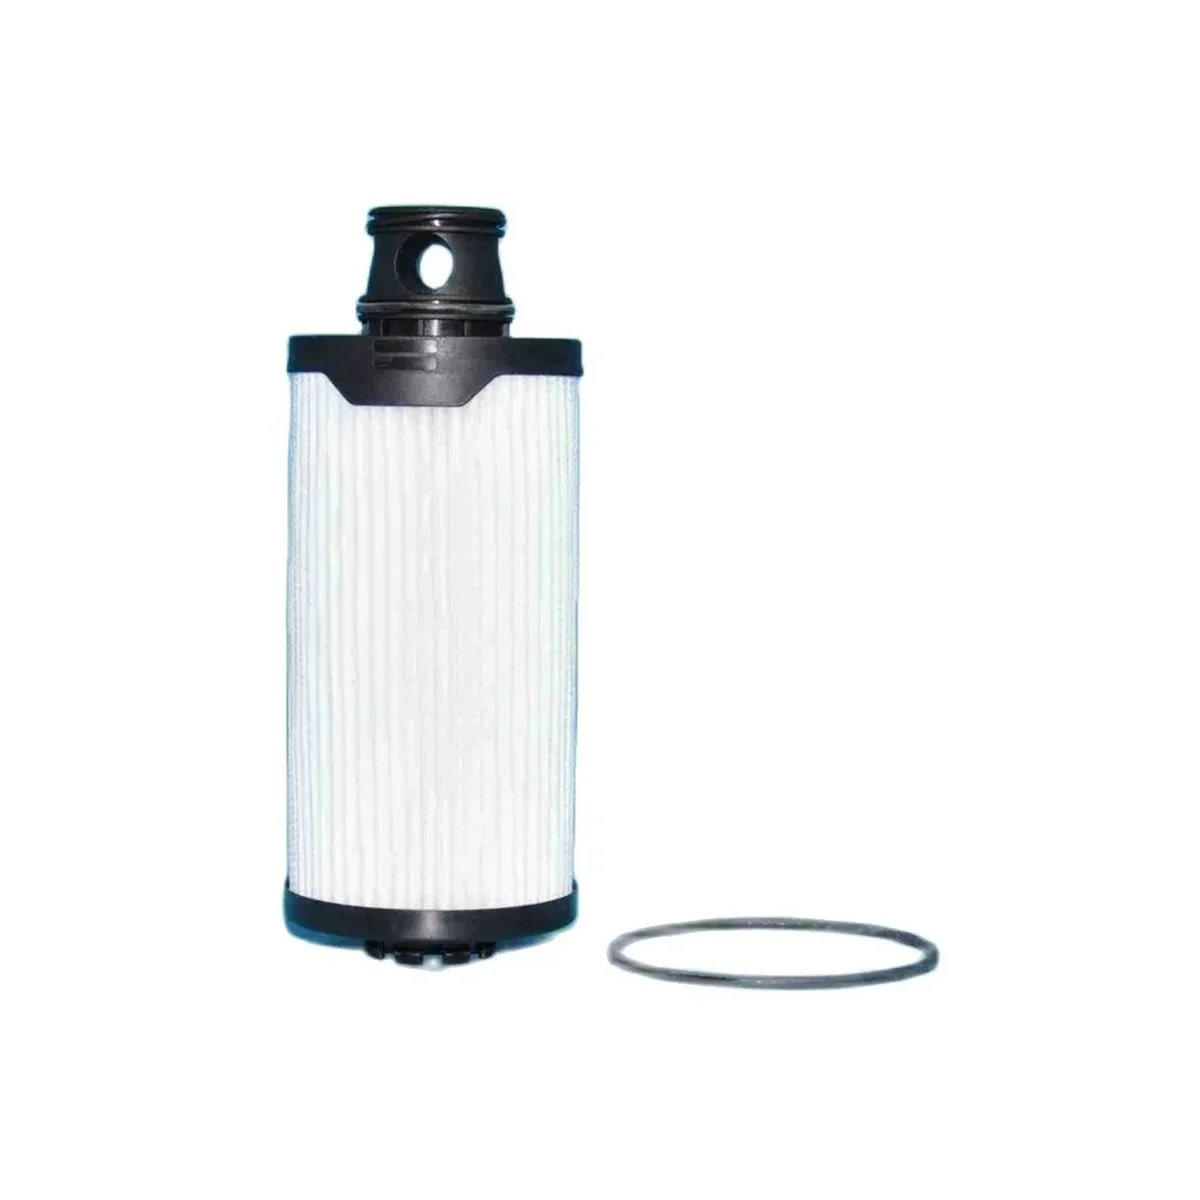 

Топливный фильтр 45 мм для гидравлического фильтра двигателя сельскохозяйственной техники 0007811491, 3779181, SN70406, SN70430